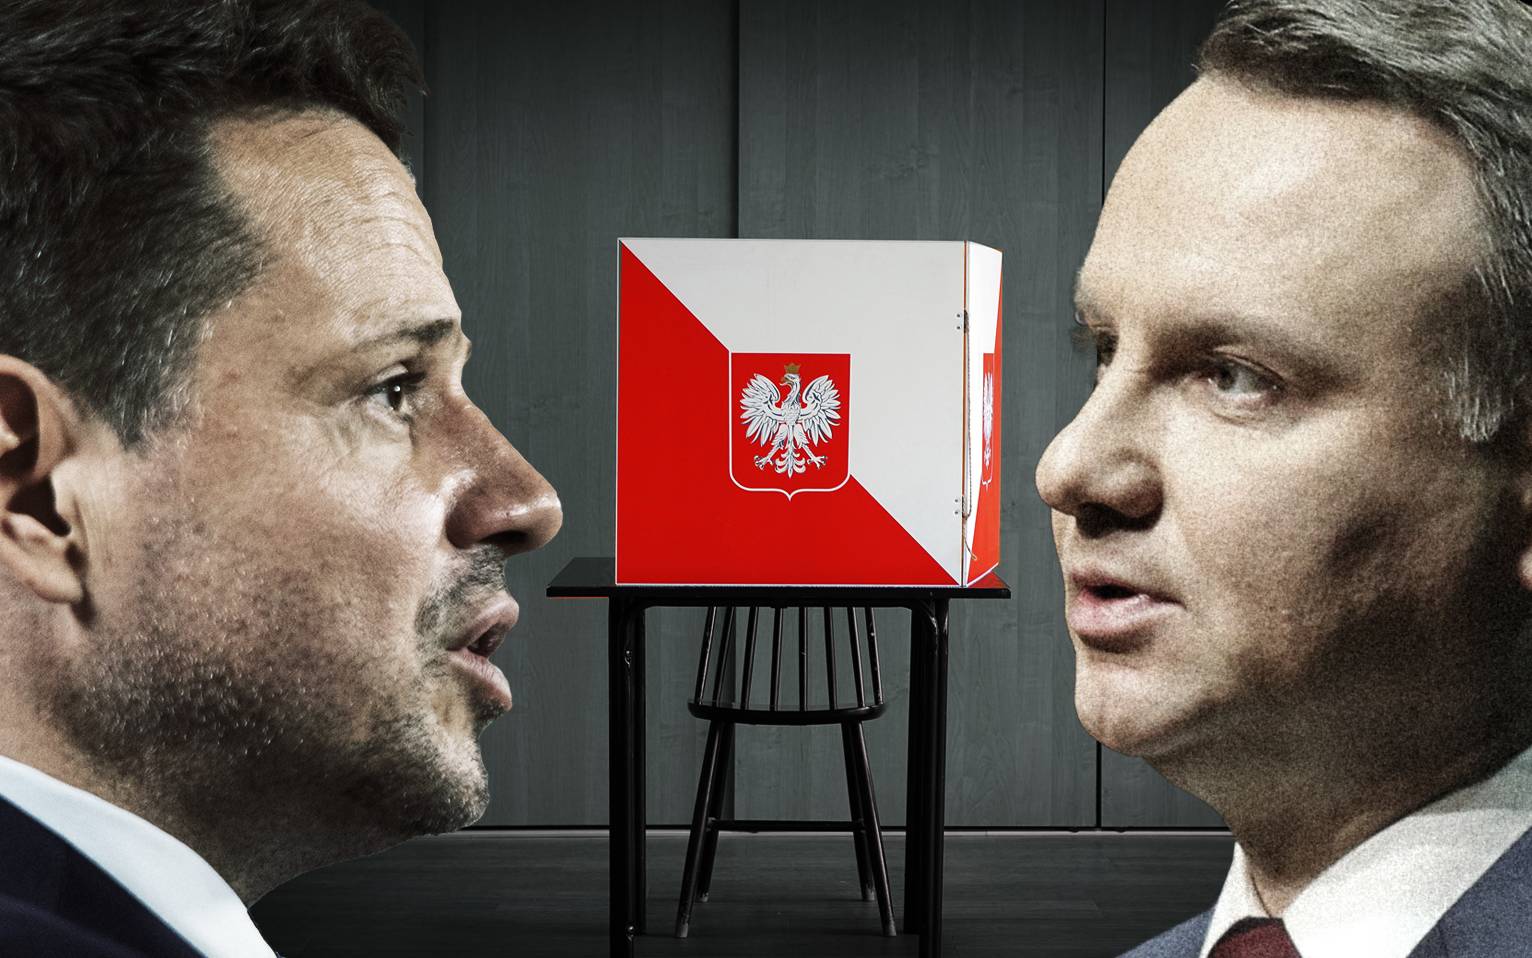 Grafika do artykułu Głosy zagranicy mogą zaważyć na wyniku. Polonia mówi o wypaczeniach i zapowiada protesty wyborcze